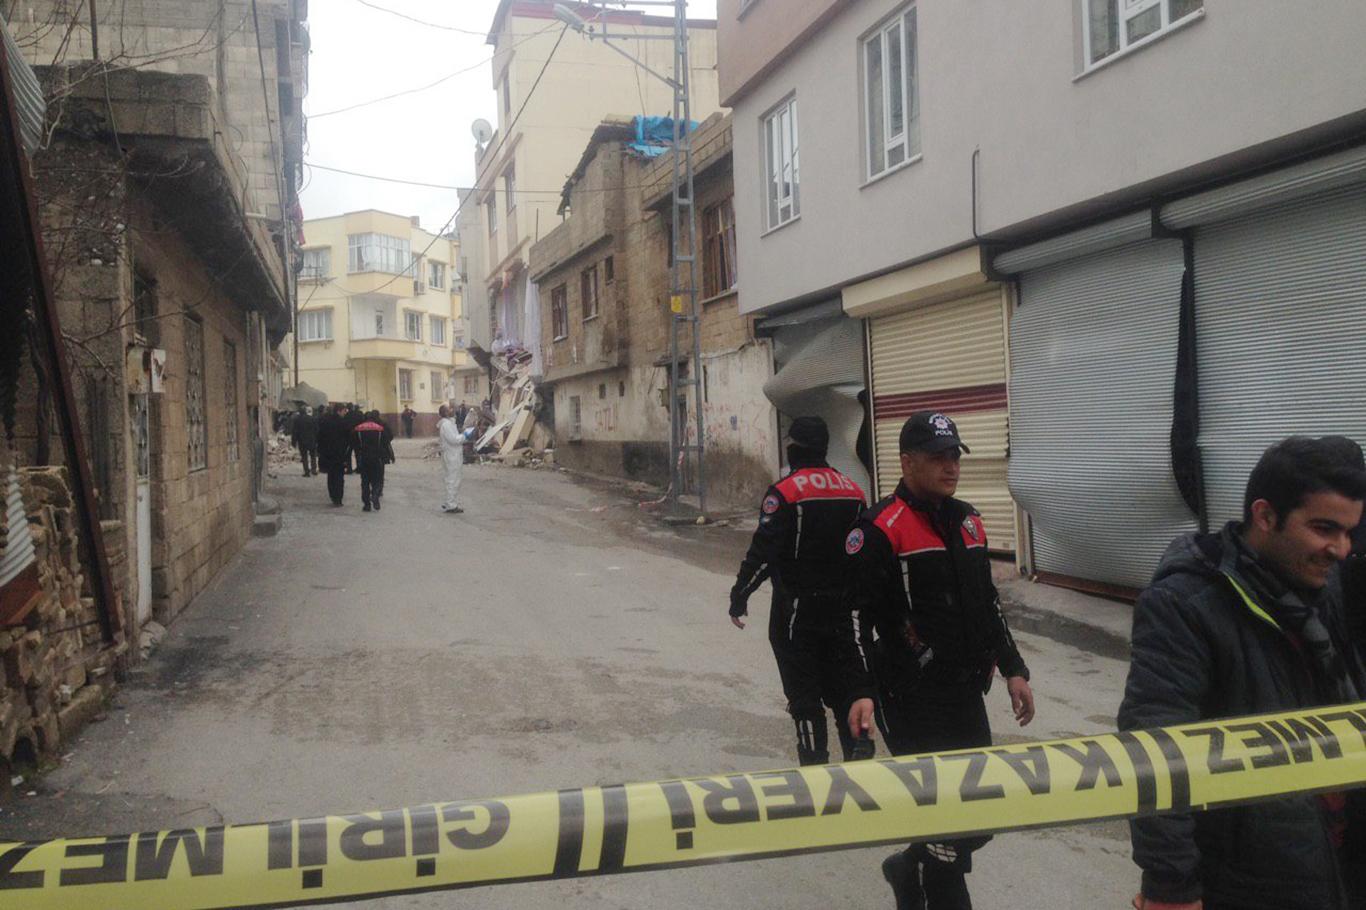 Gaziantep'te doğal gaz patlaması: 5 yaralı